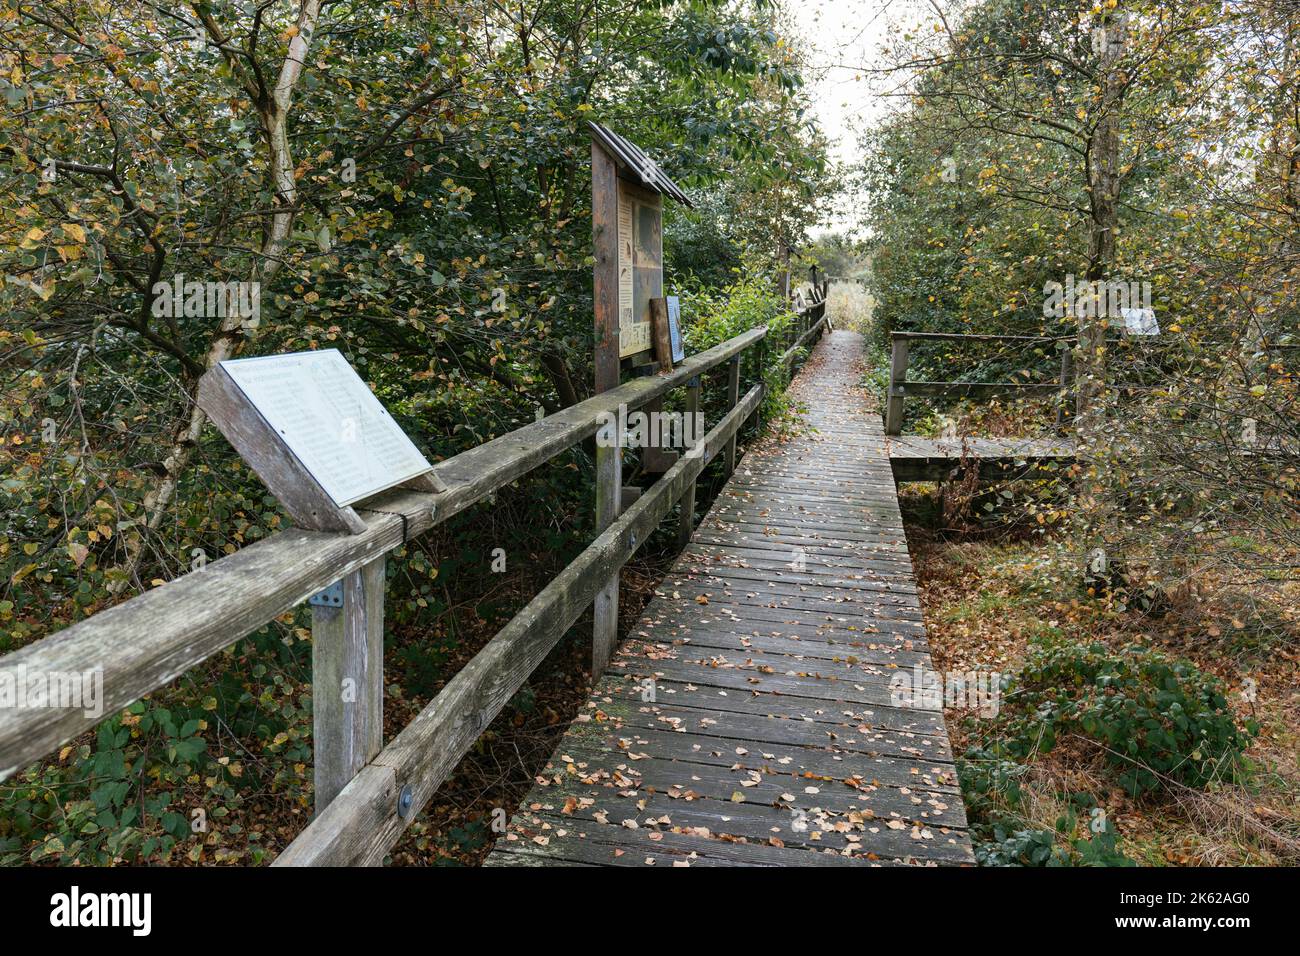 Sentieri in legno con bacheche informative nella lontra biotope Lunestedt vicino a Beverstedt. Foto Stock